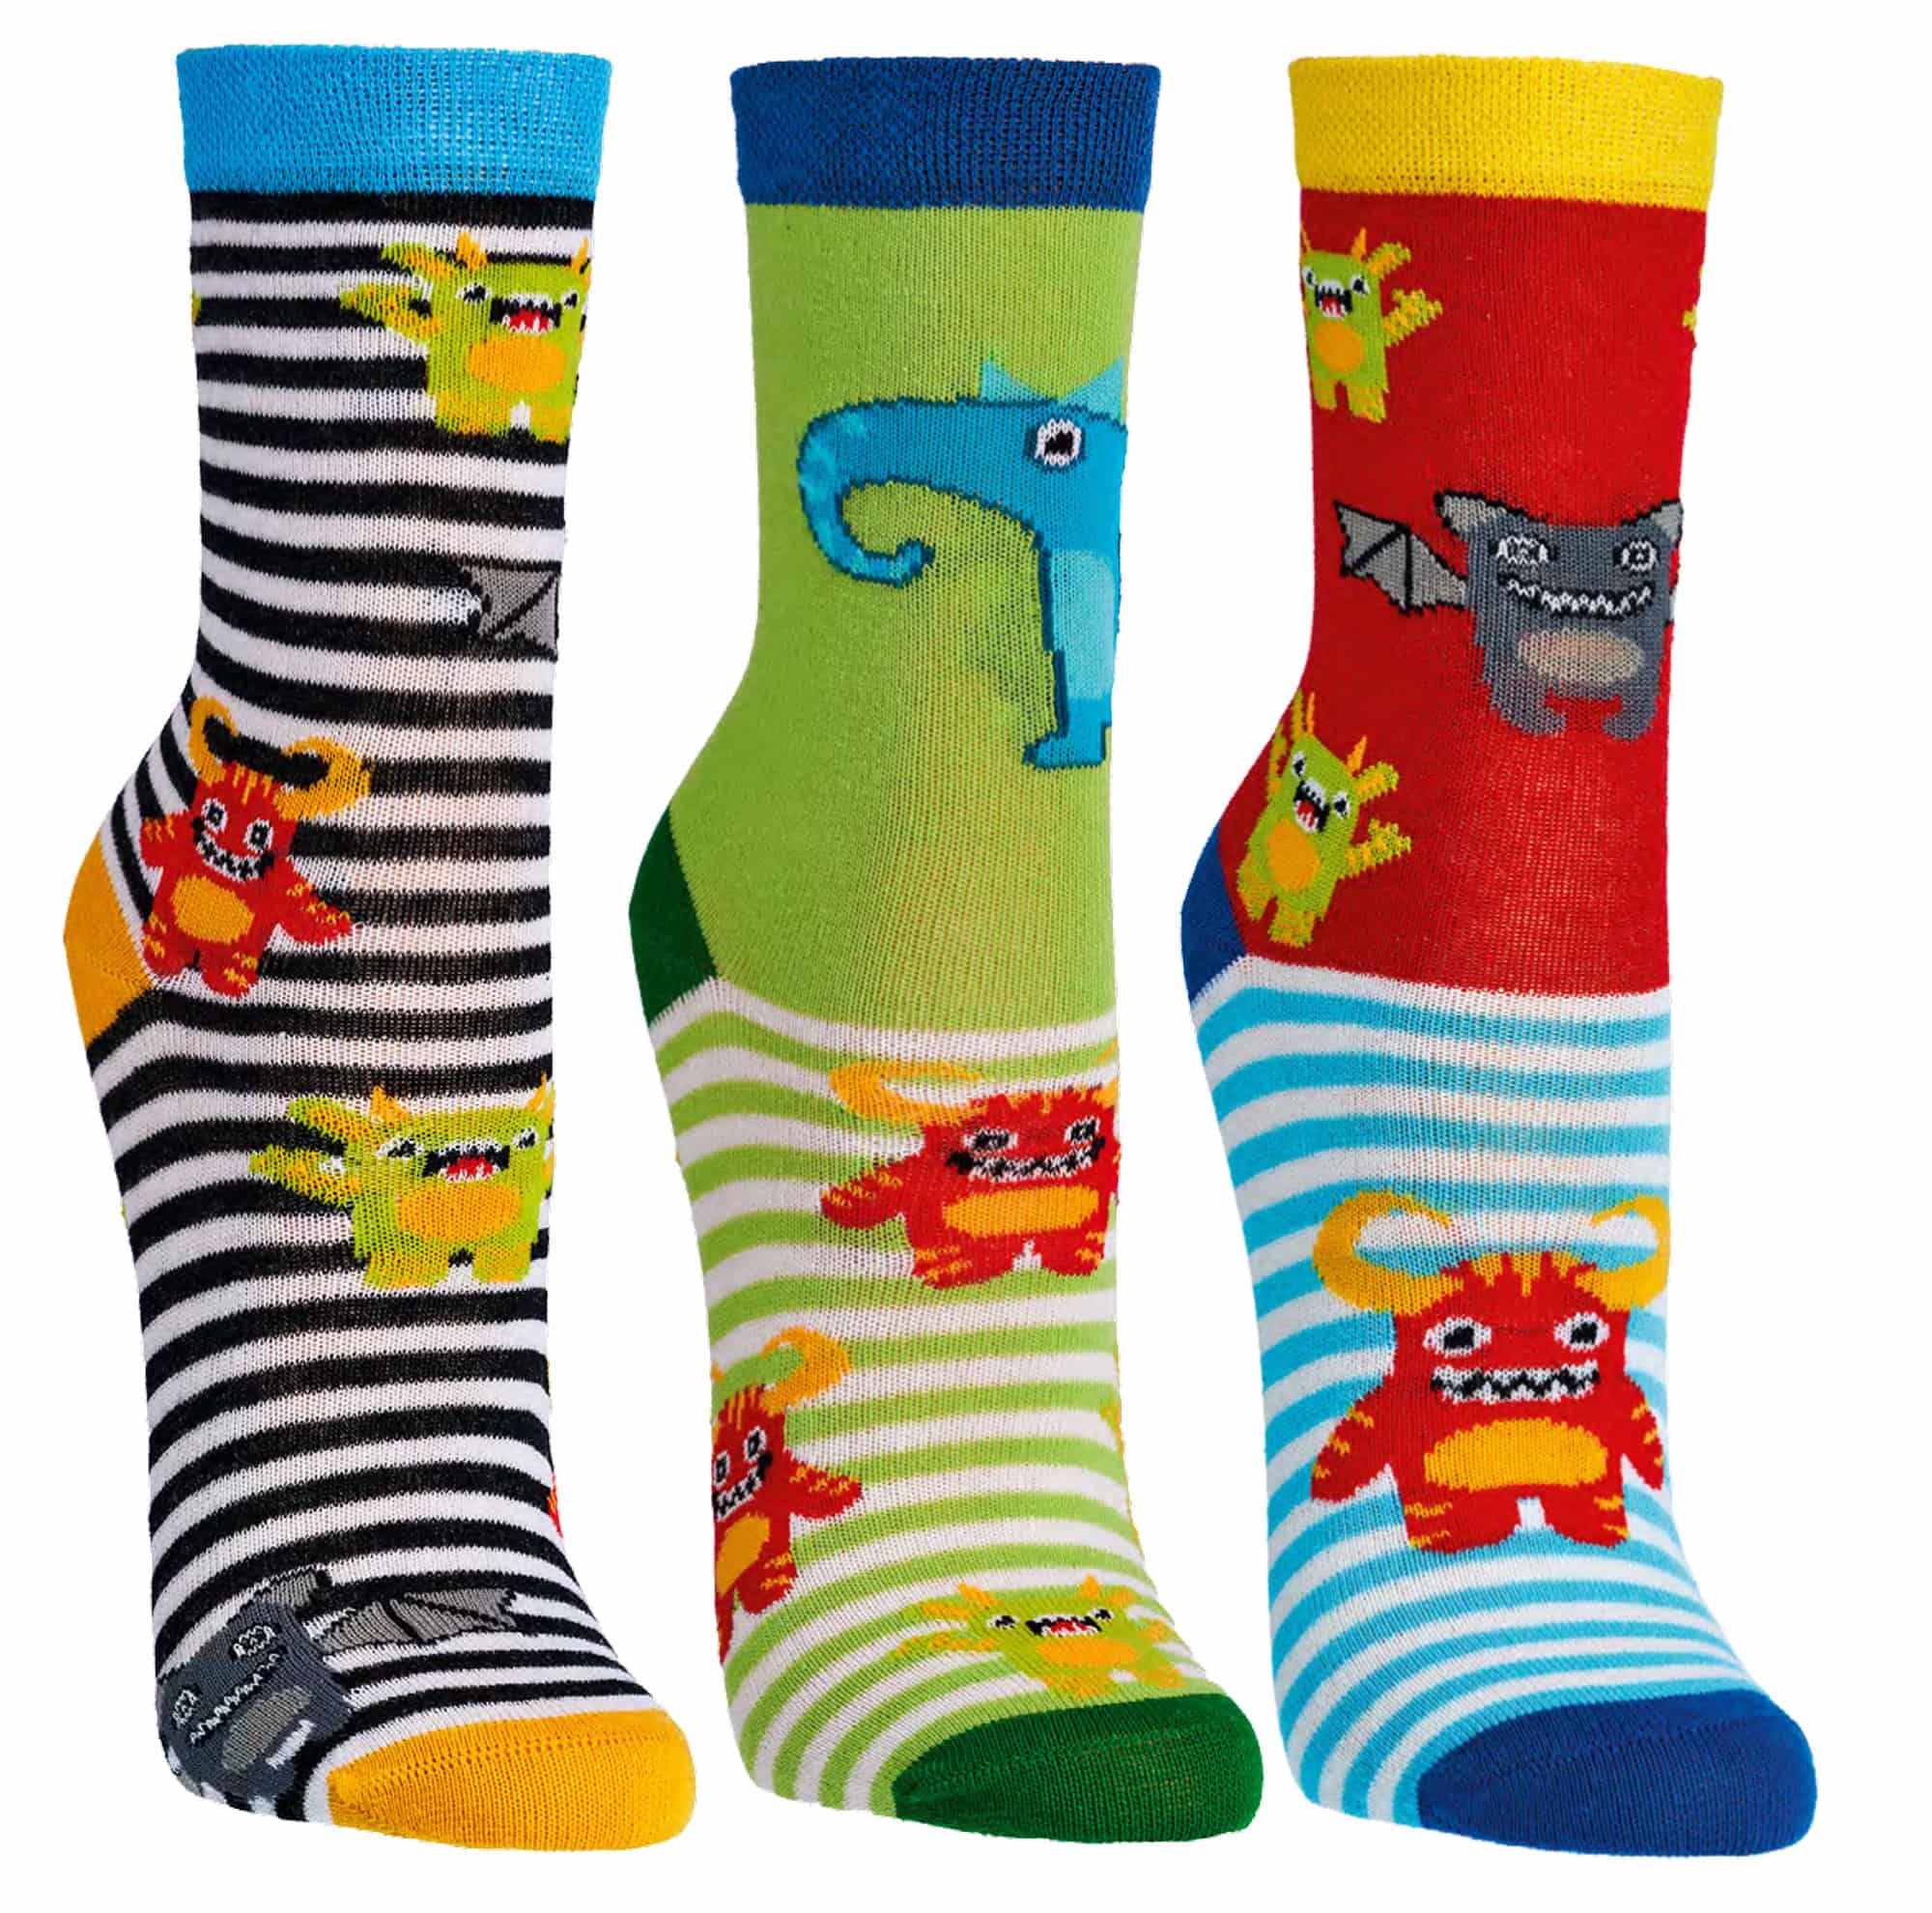  Kinder Socken   FRECHDACHS- KLEINE FRECHE MONSTER    aus weichem Baumwolle   3 Paar